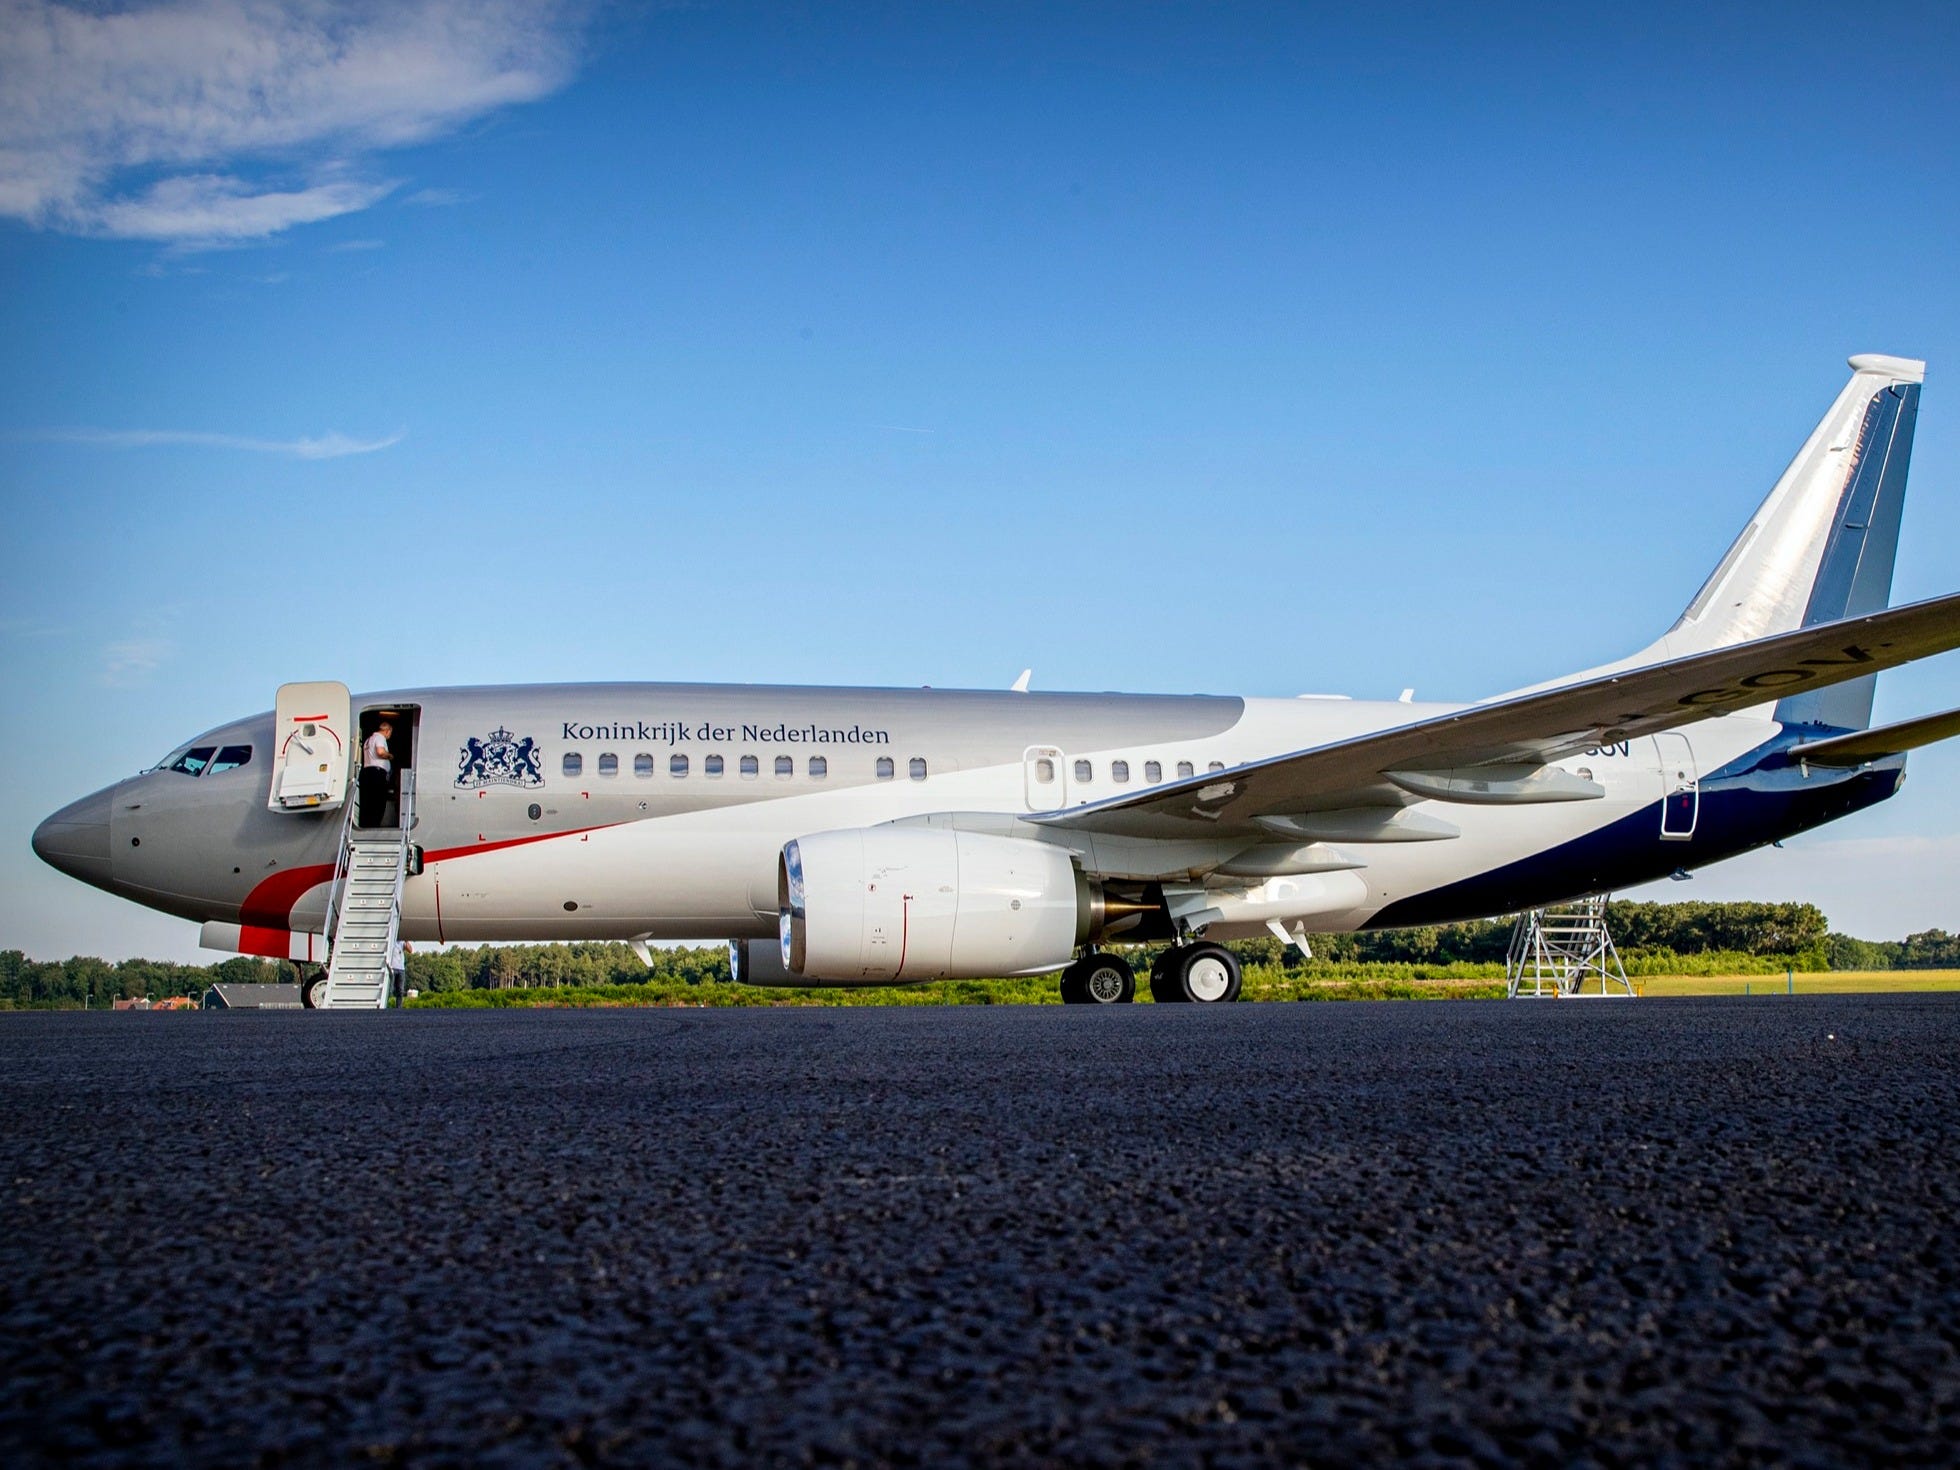 De Nederlandse regering maakt sinds een jaar gebruik van de PH-GOV als regeringsvliegtuig. Dat is een Boeing 737 van het type Business Jet.